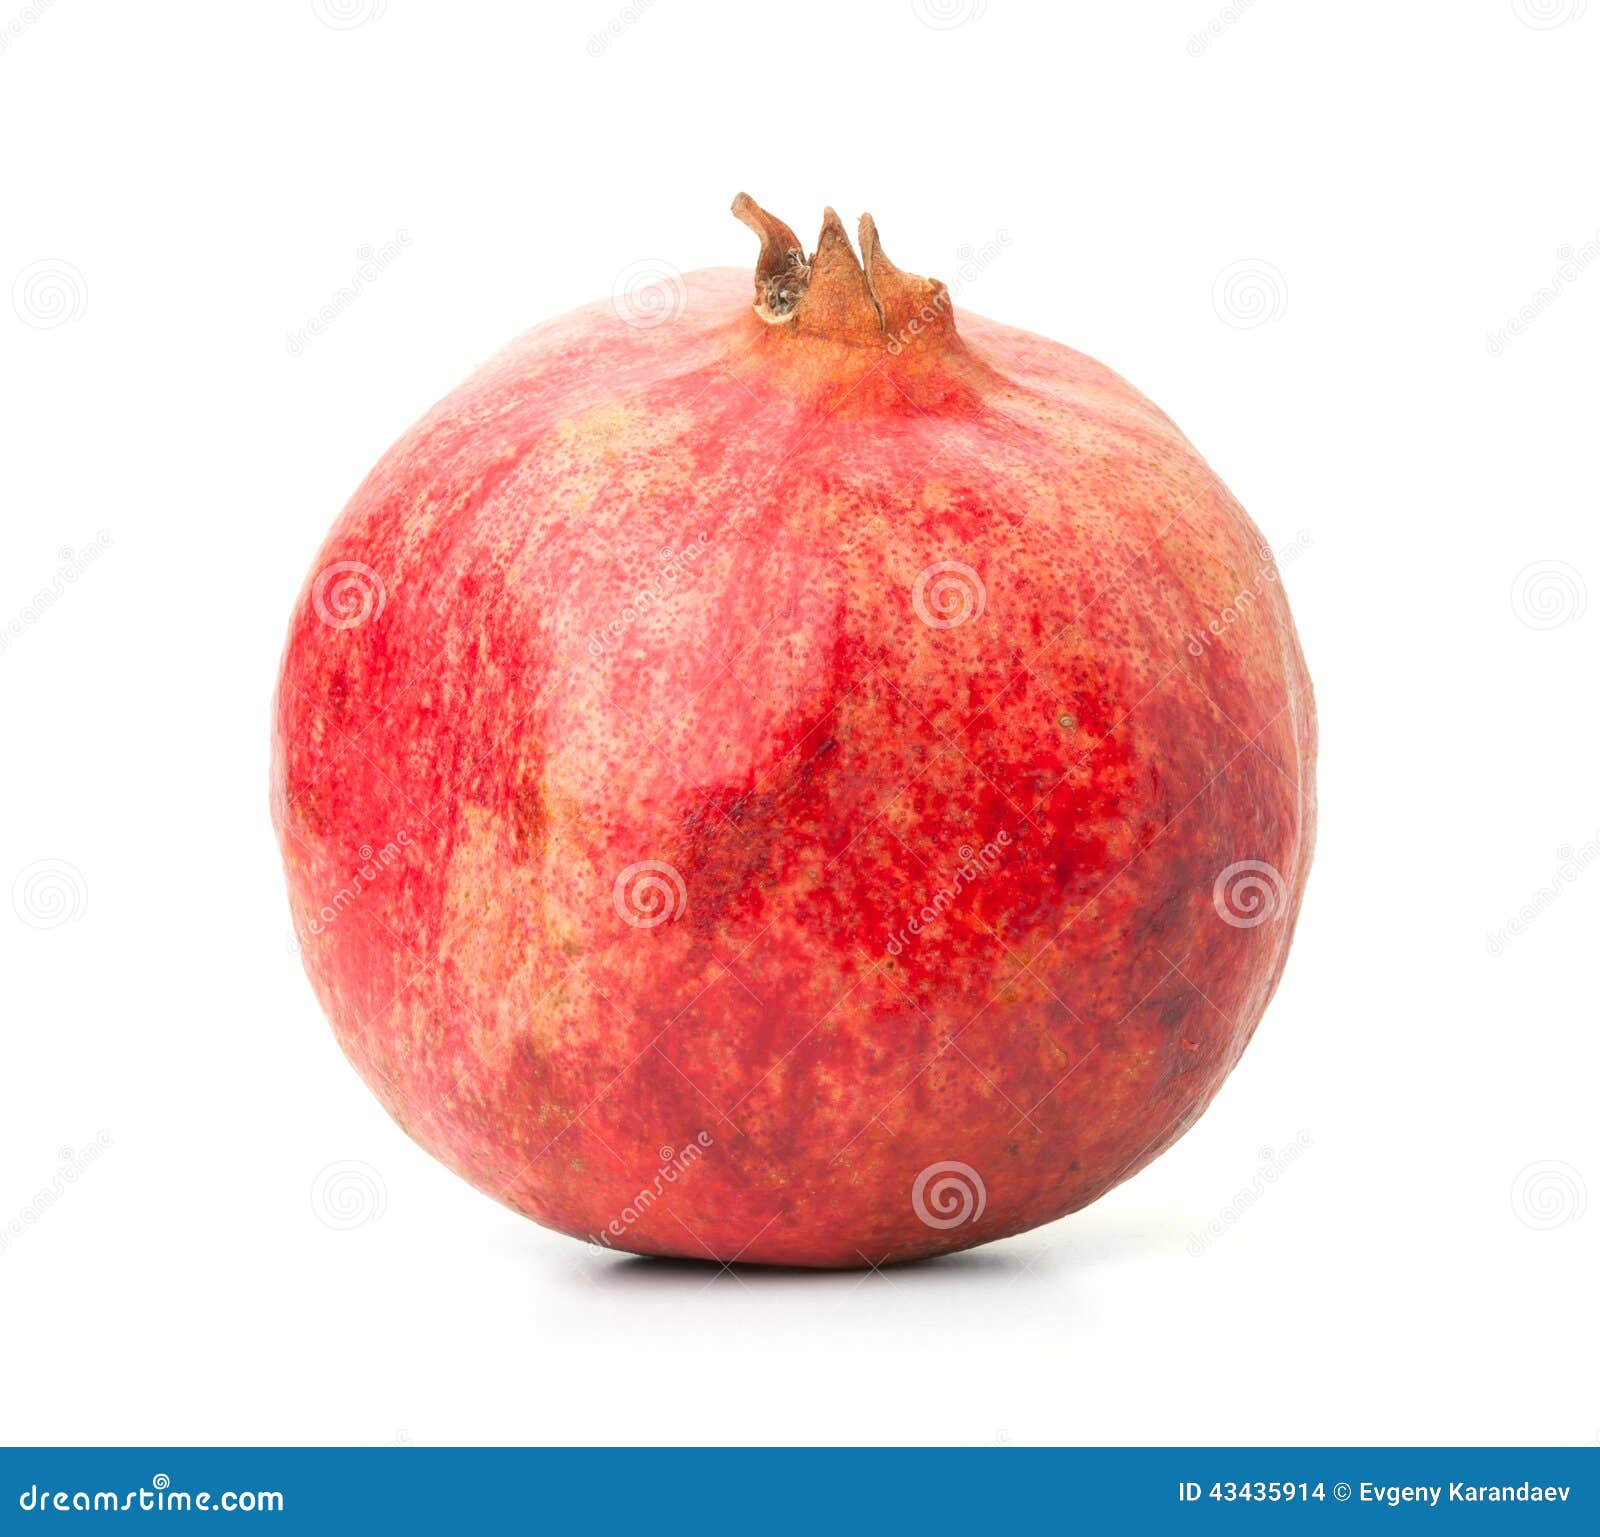 photo stock fruit rouge de grenade image